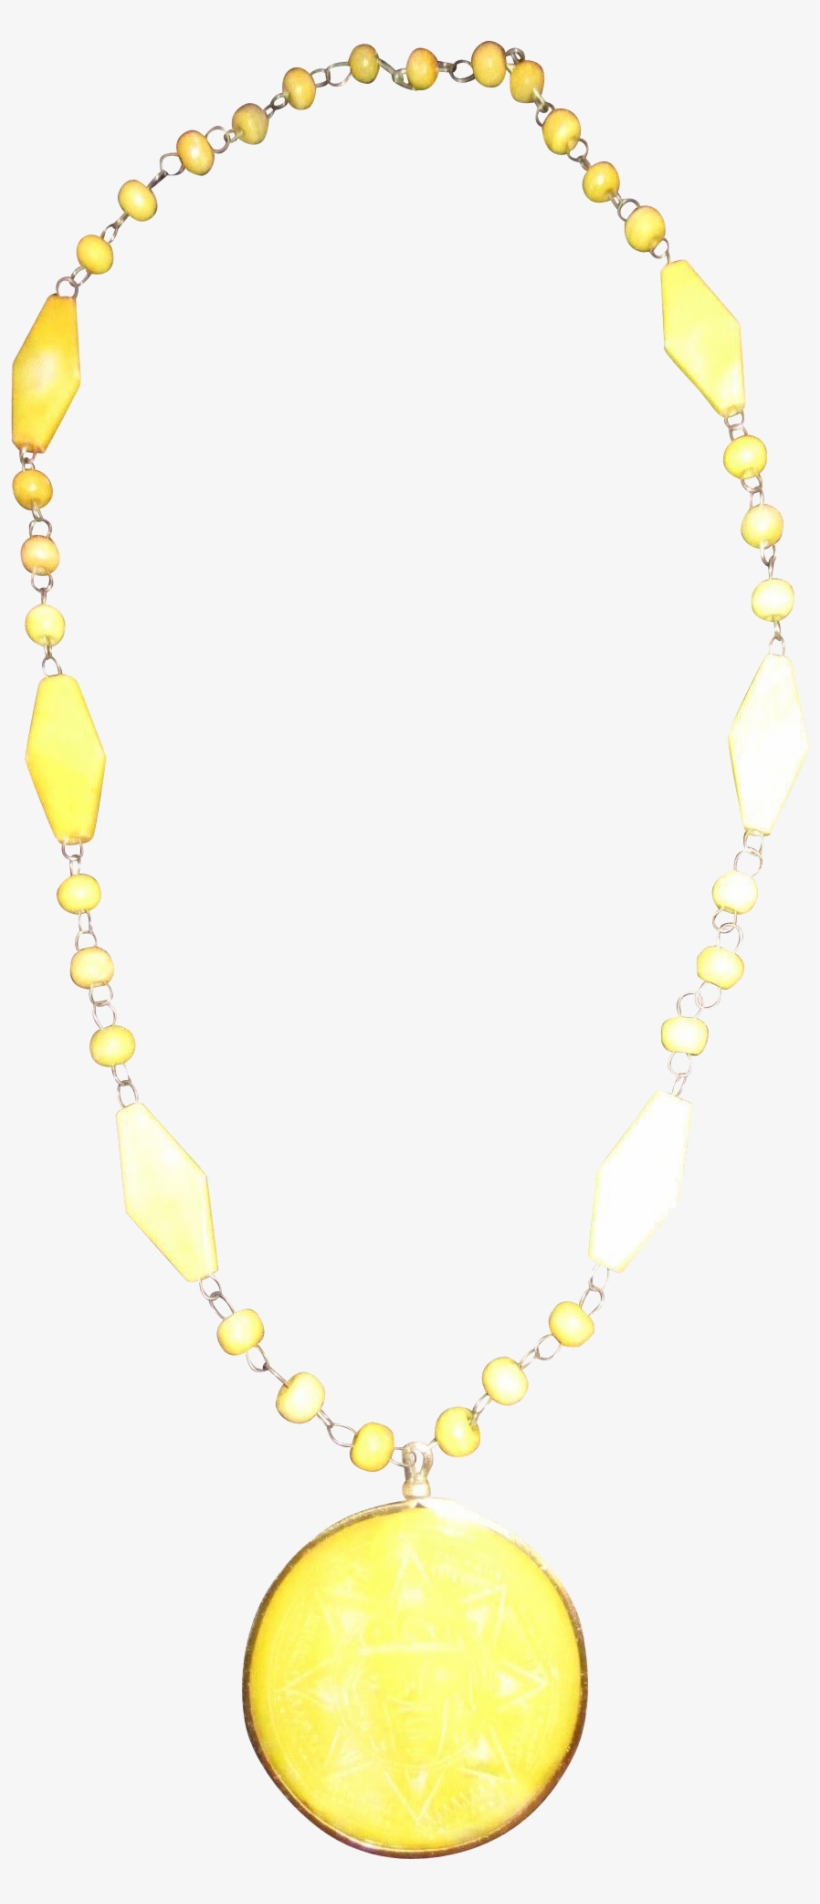 Lemon Yellow Sun Pendant Necklace Plastics Medallion - Necklace, transparent png #4074817